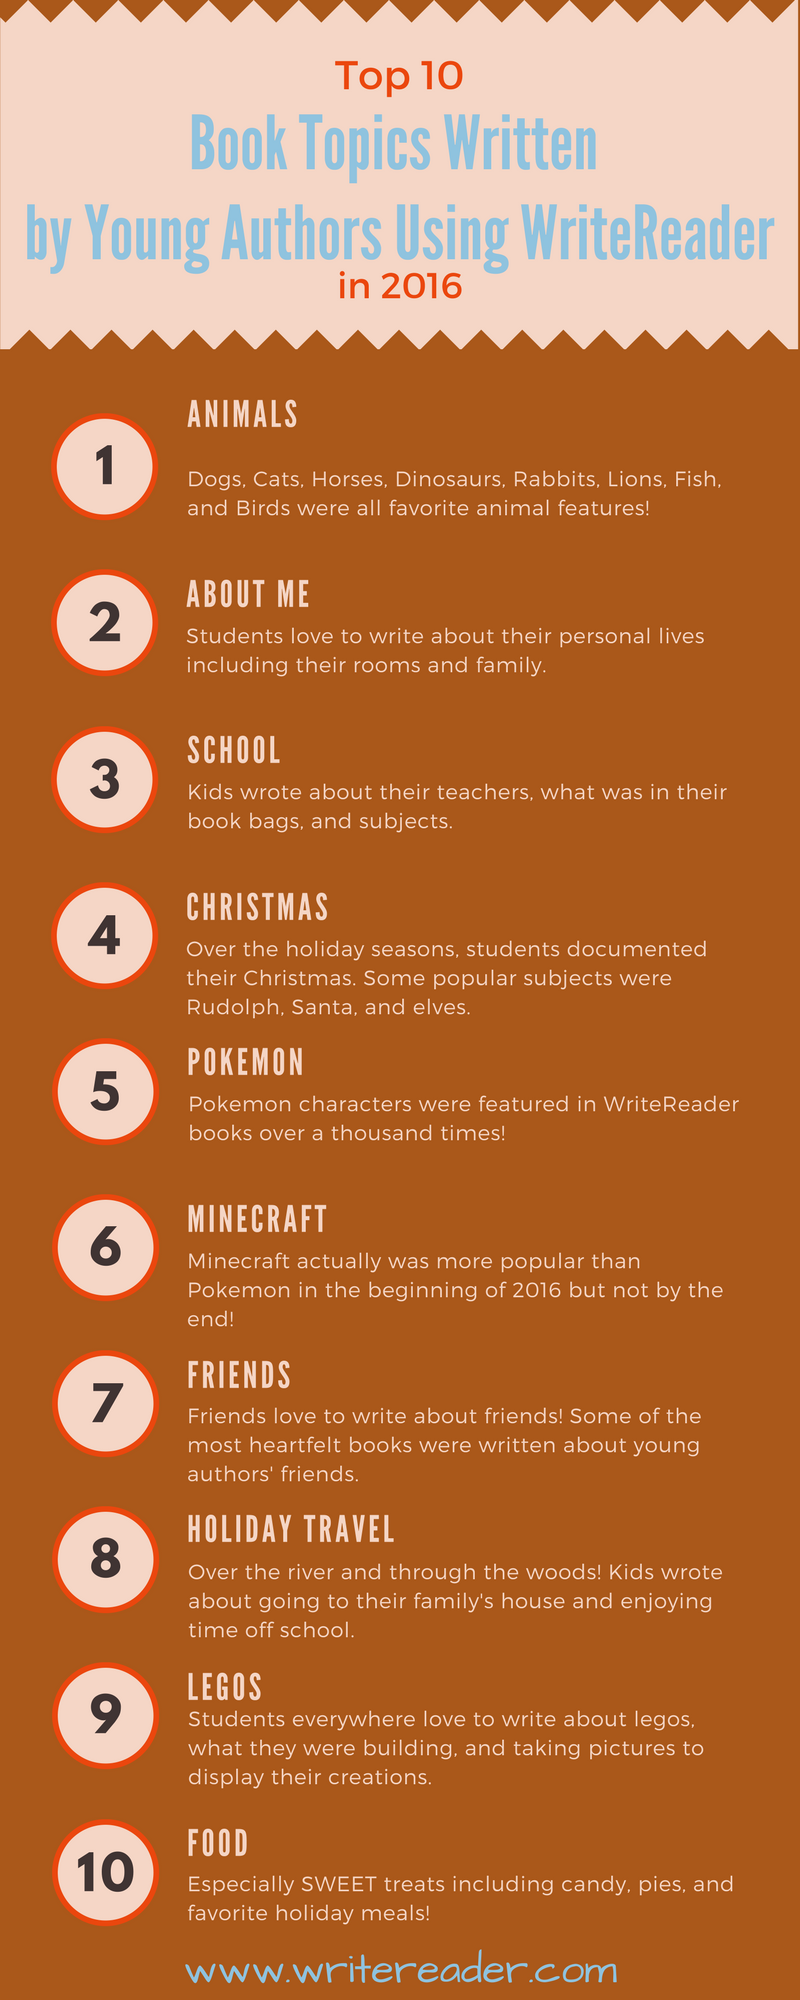 Top 10 Book Topics Written in 2016 - WriteReader